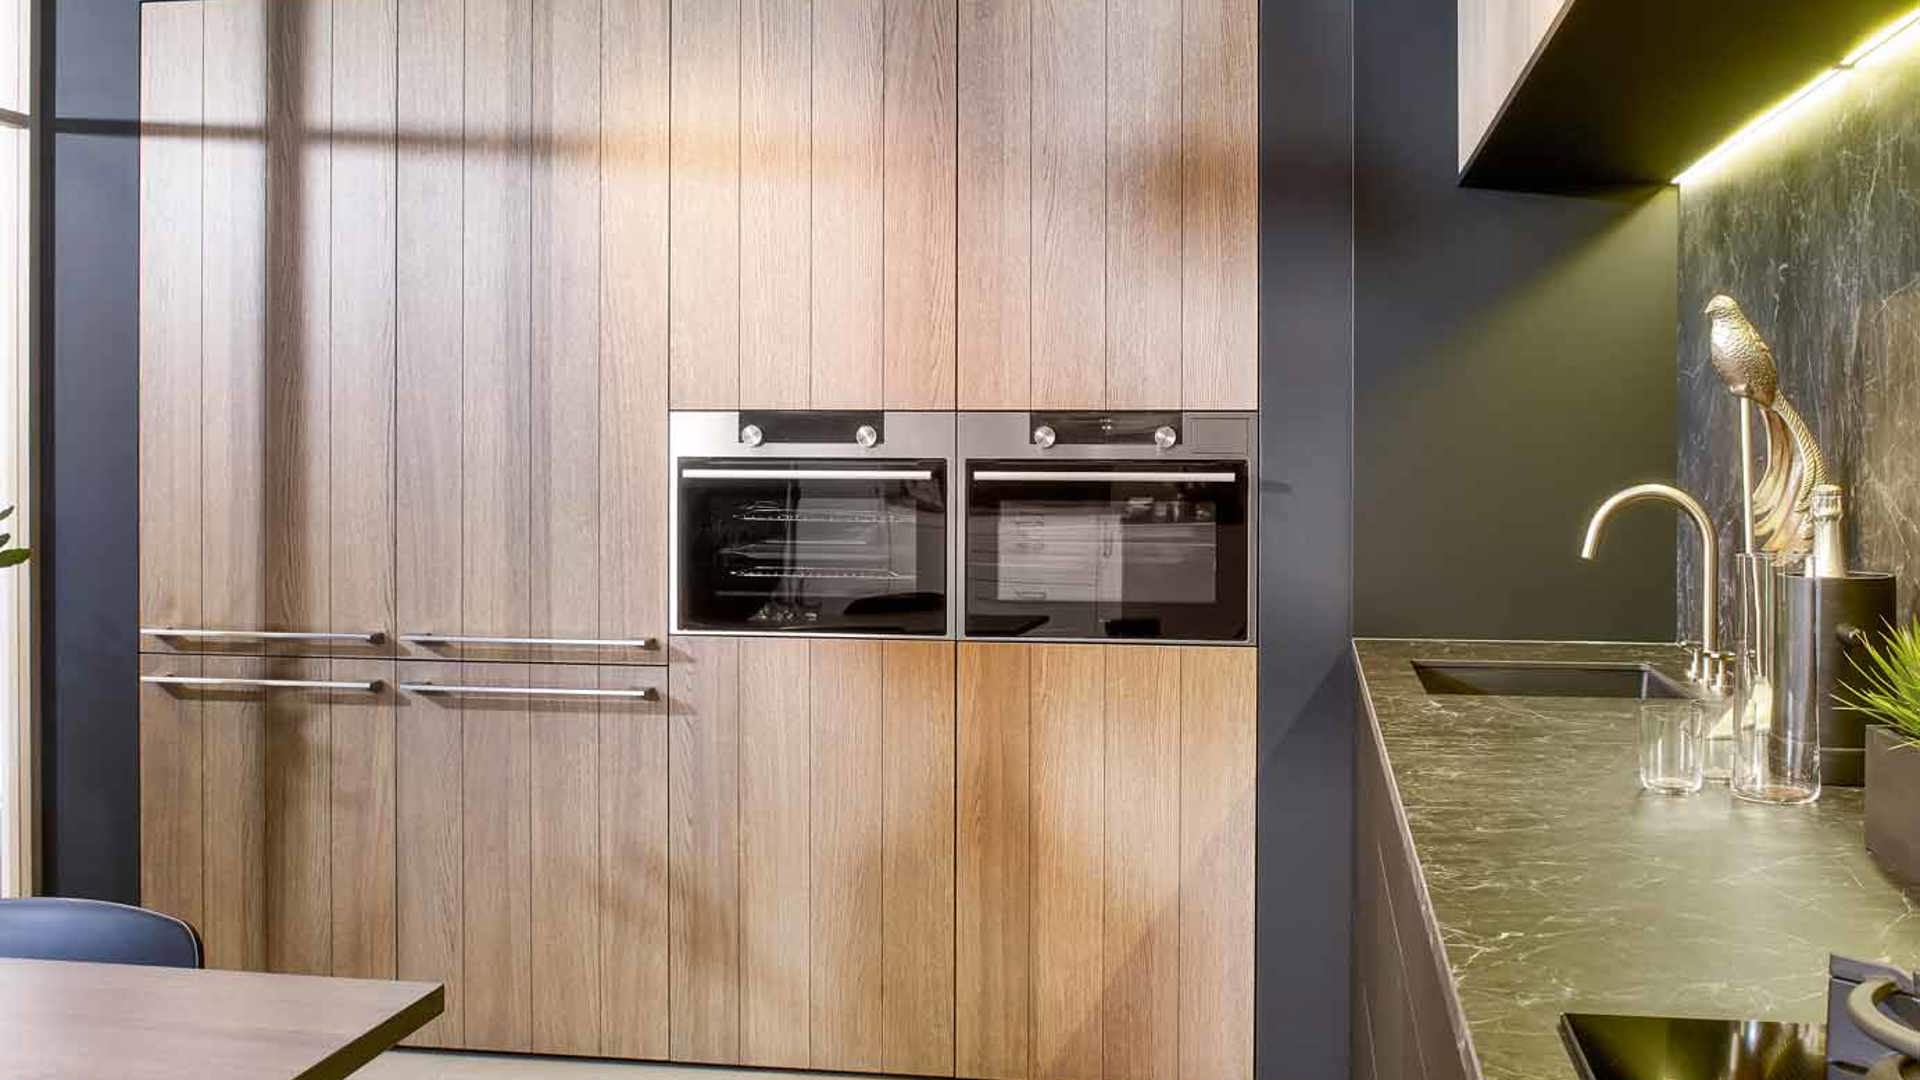 Chique moderne keuken met houten kastenwand voor extra opbergruimte